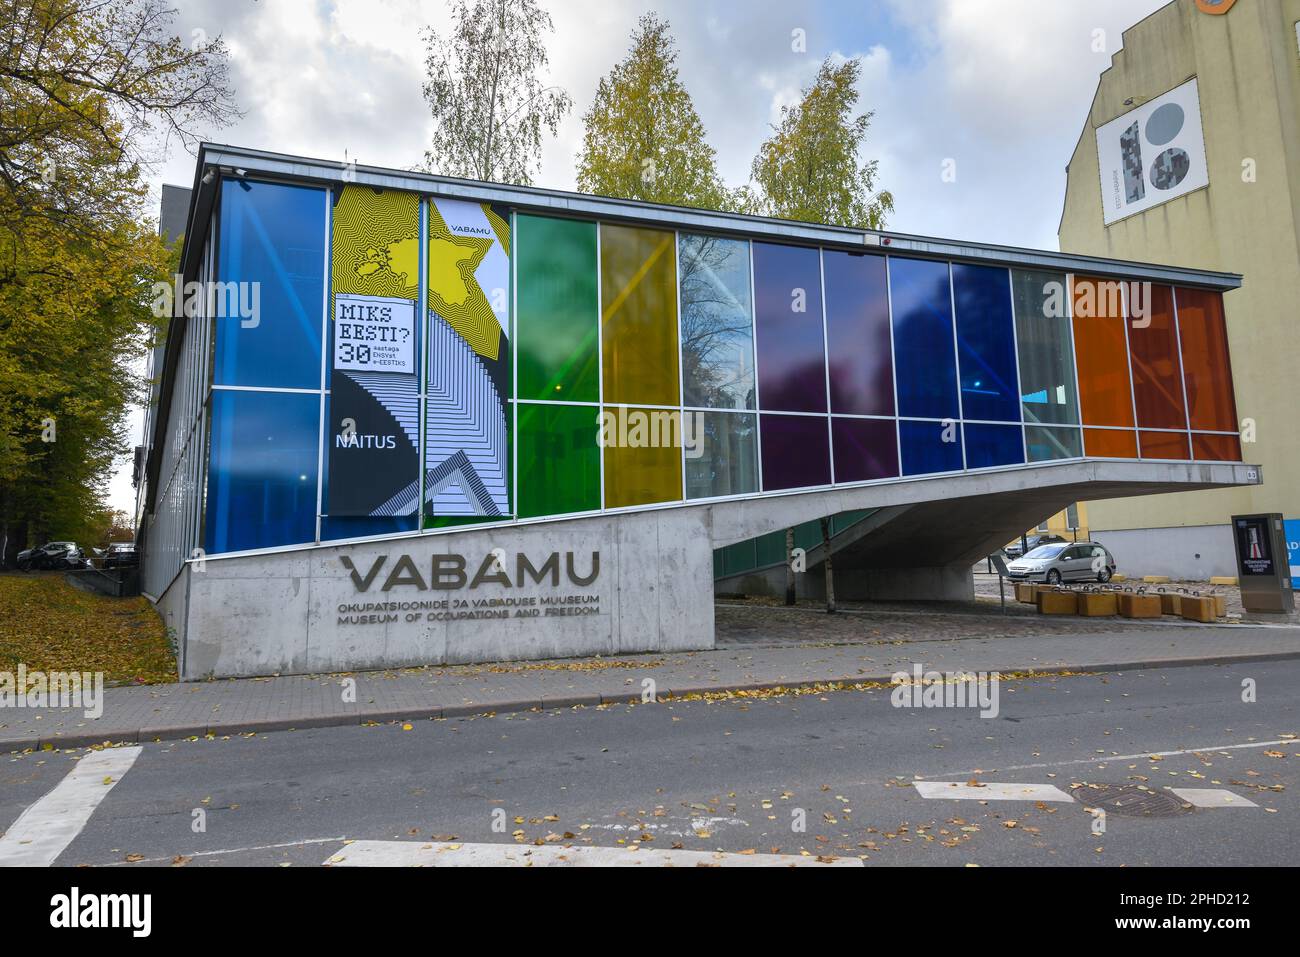 Vabamu Museo delle occupazioni e della libertà a Tallinn. Esterno del Museo di storia estone che racconta le occupazioni dell'Estonia chiamata Vabamu. Foto Stock